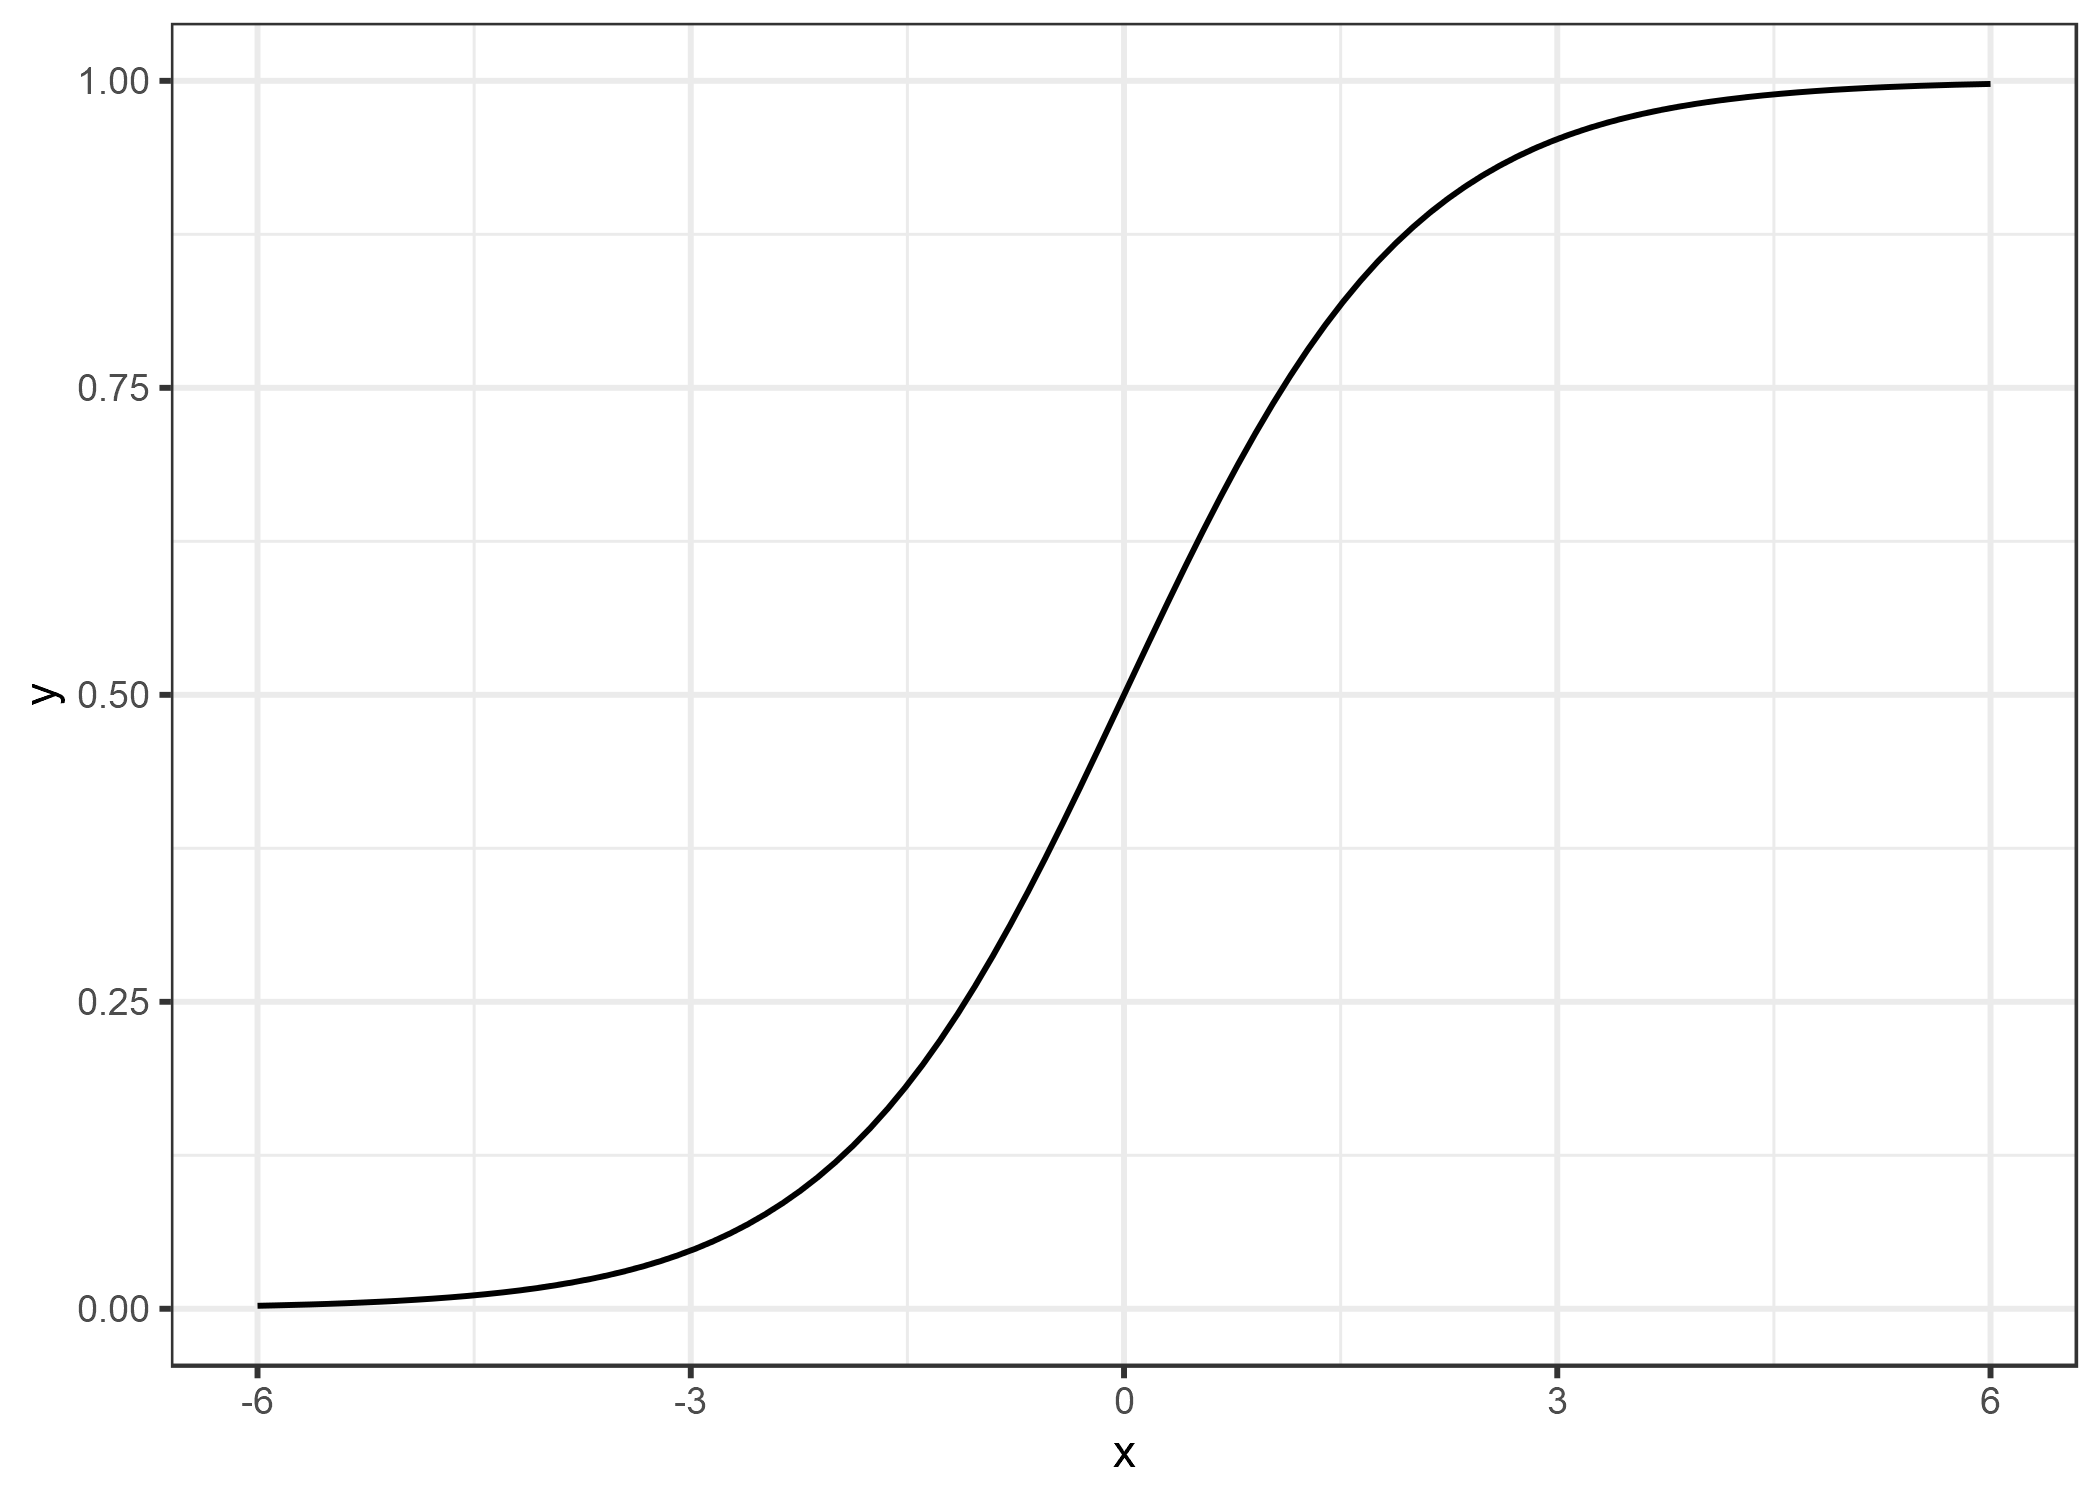 La función logística. Produce números entre 0 y 1. En la entrada 0, genera 0.5.